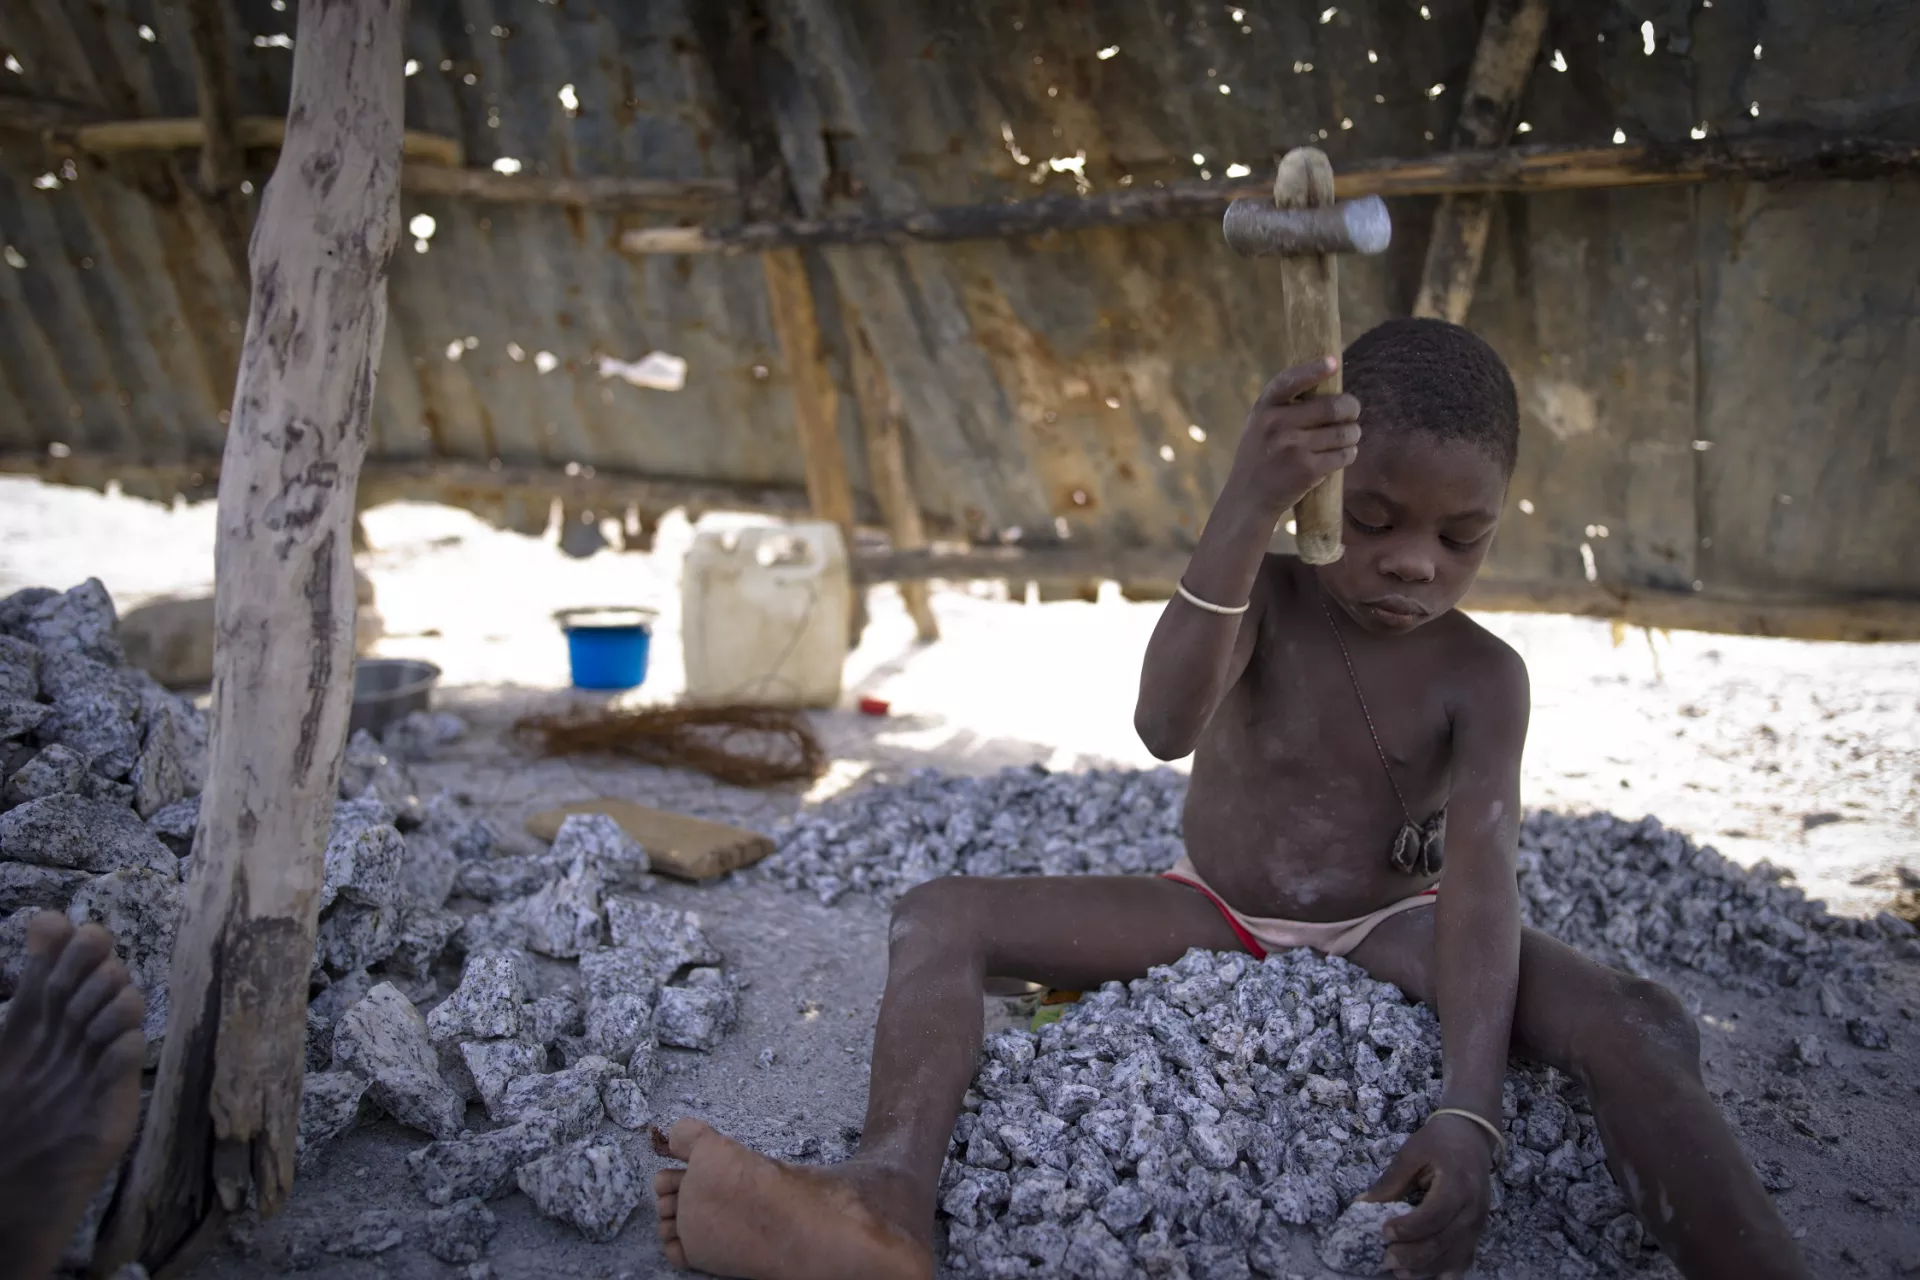 Travail des enfants. Enfants concasseurs de pierres dans une carrière au Bénin